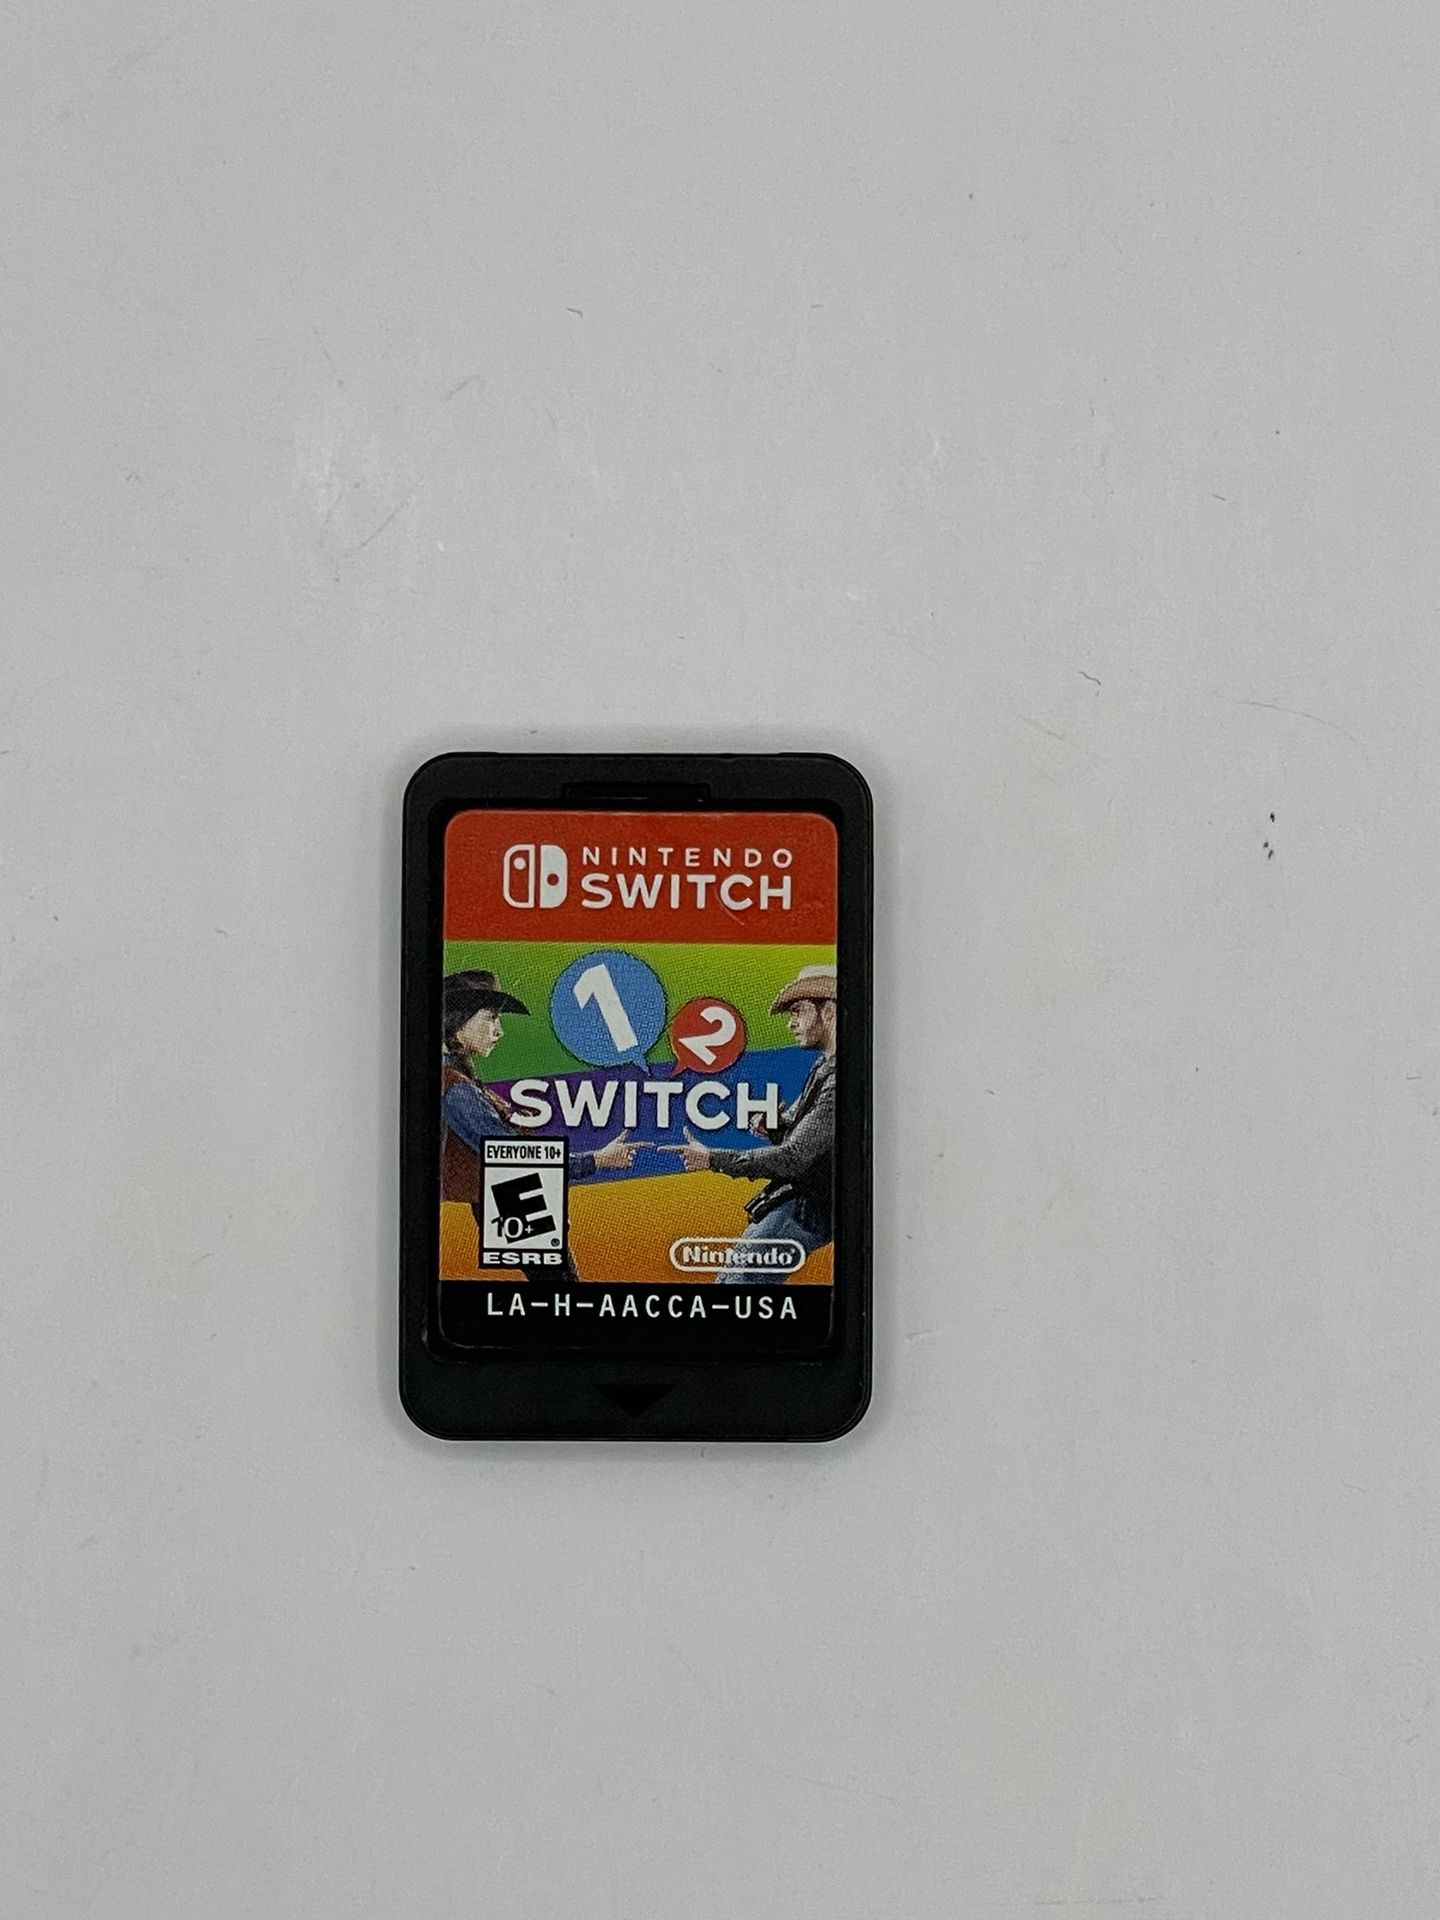 1-2-Switch - Nintendo Switch